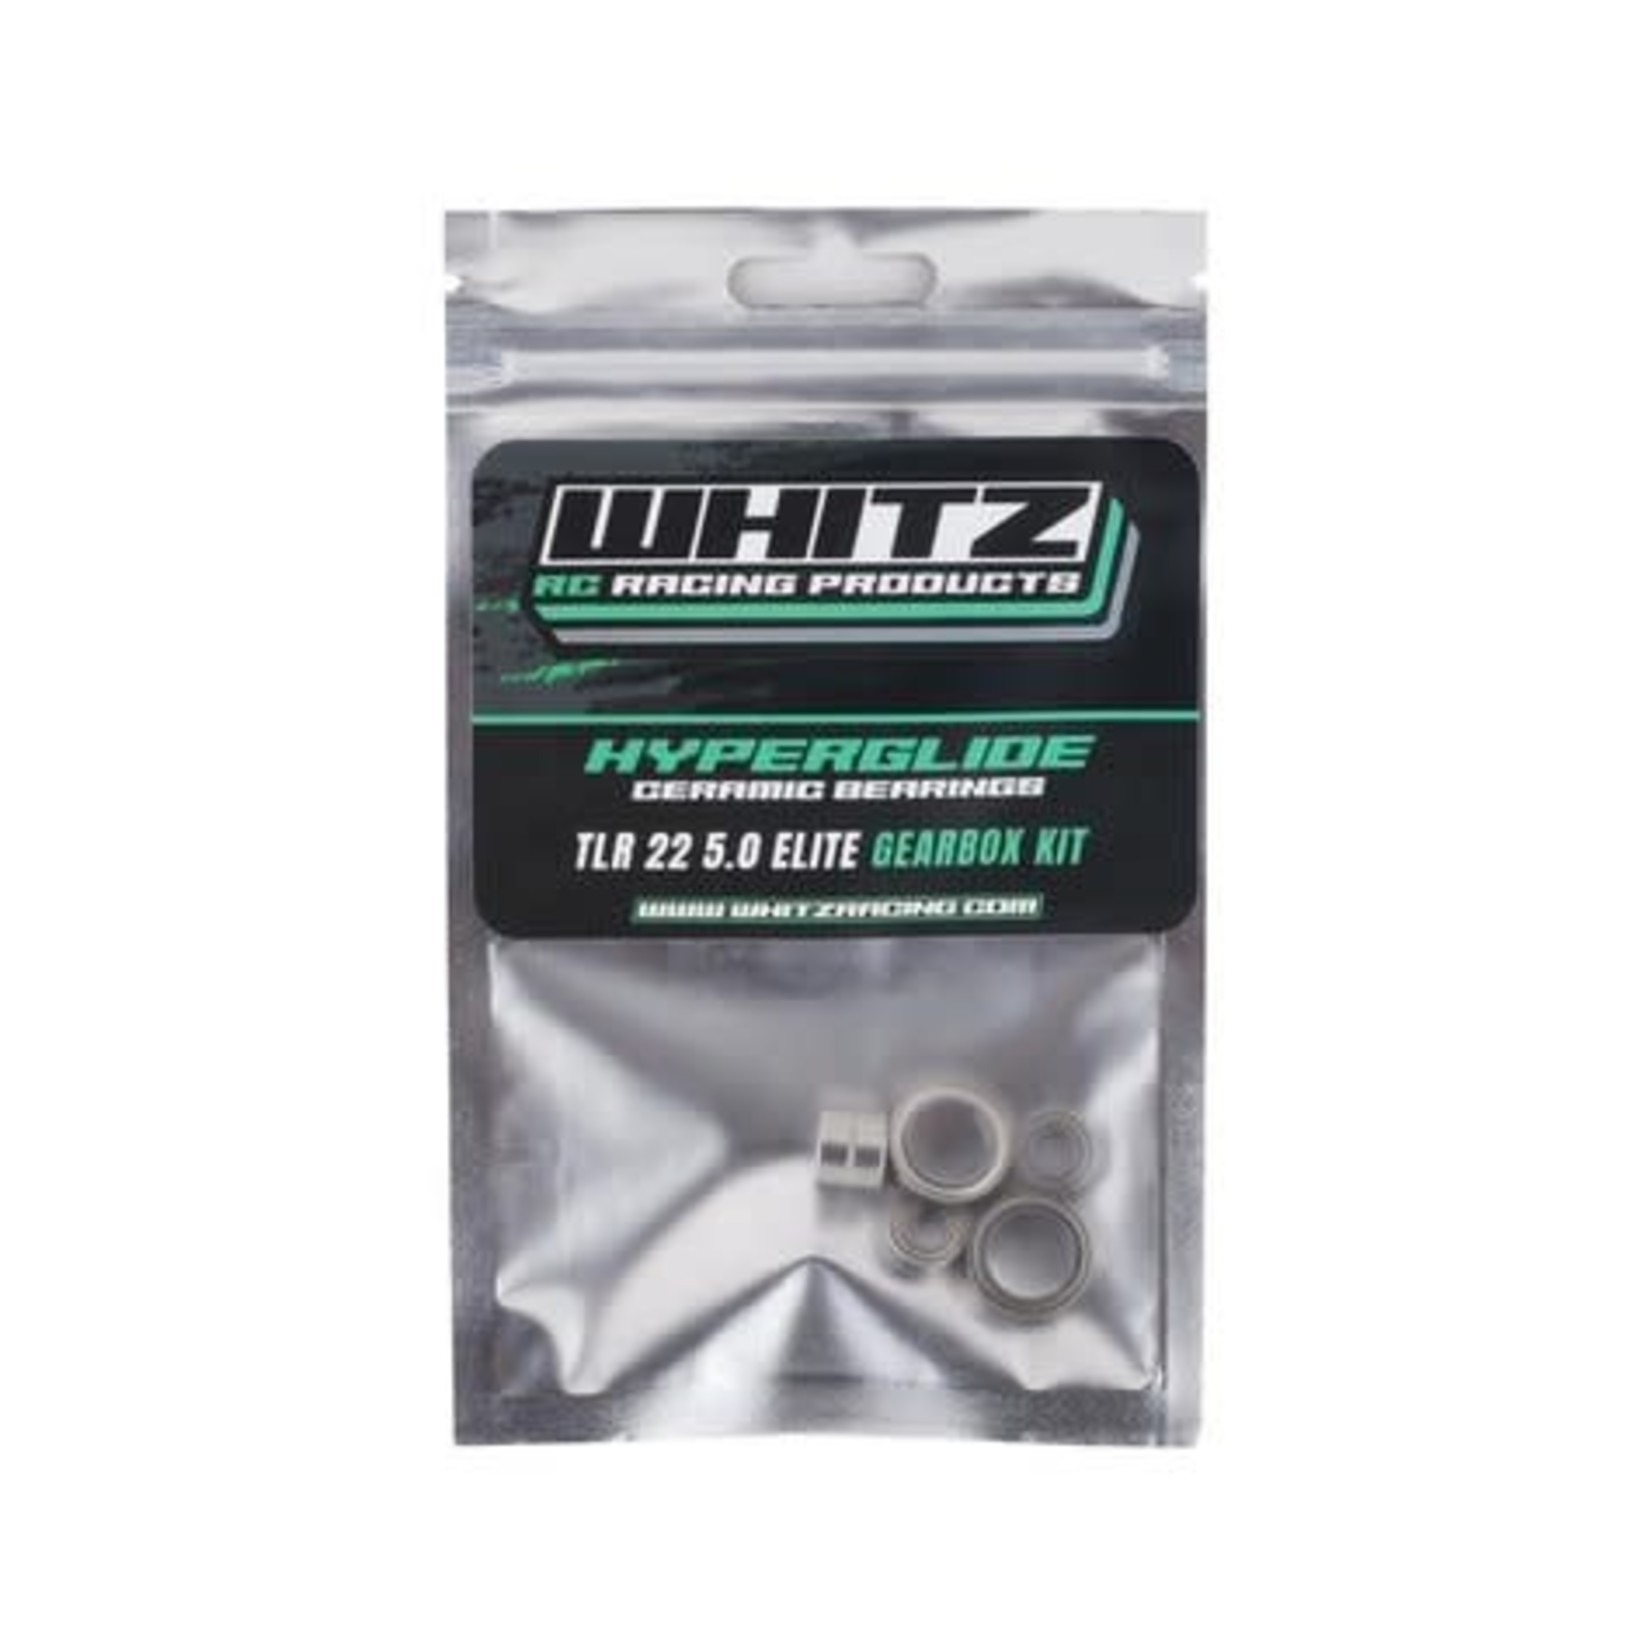 Whitz Racing Products Whitz Racing Products Hyperglide 22 5.0 Elite Gearbox Ceramic Bearing Kit #1614